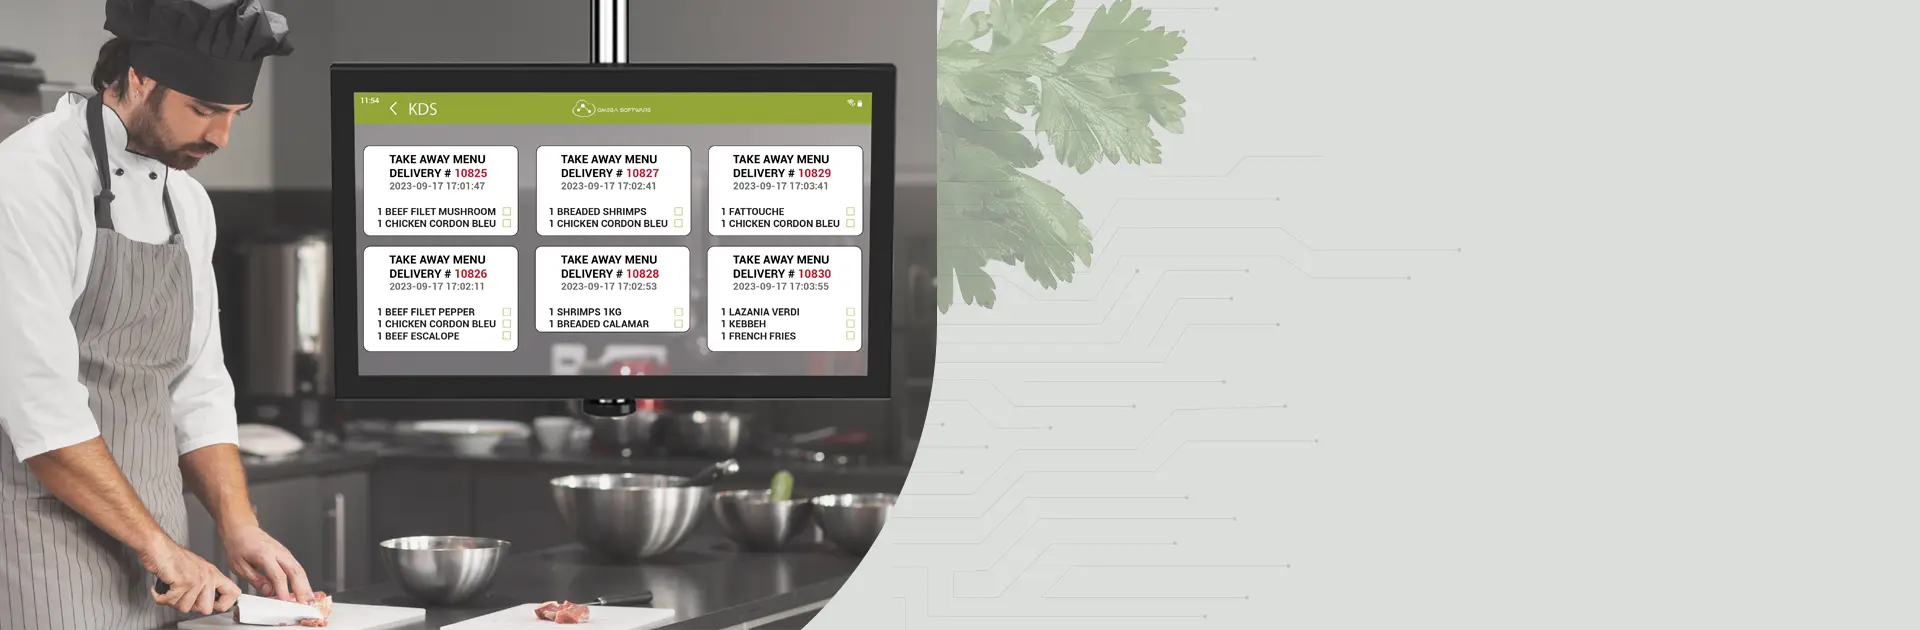 نظام شاشات العرض الرقمية بالمطبخ | أوميغا للبرمجيات